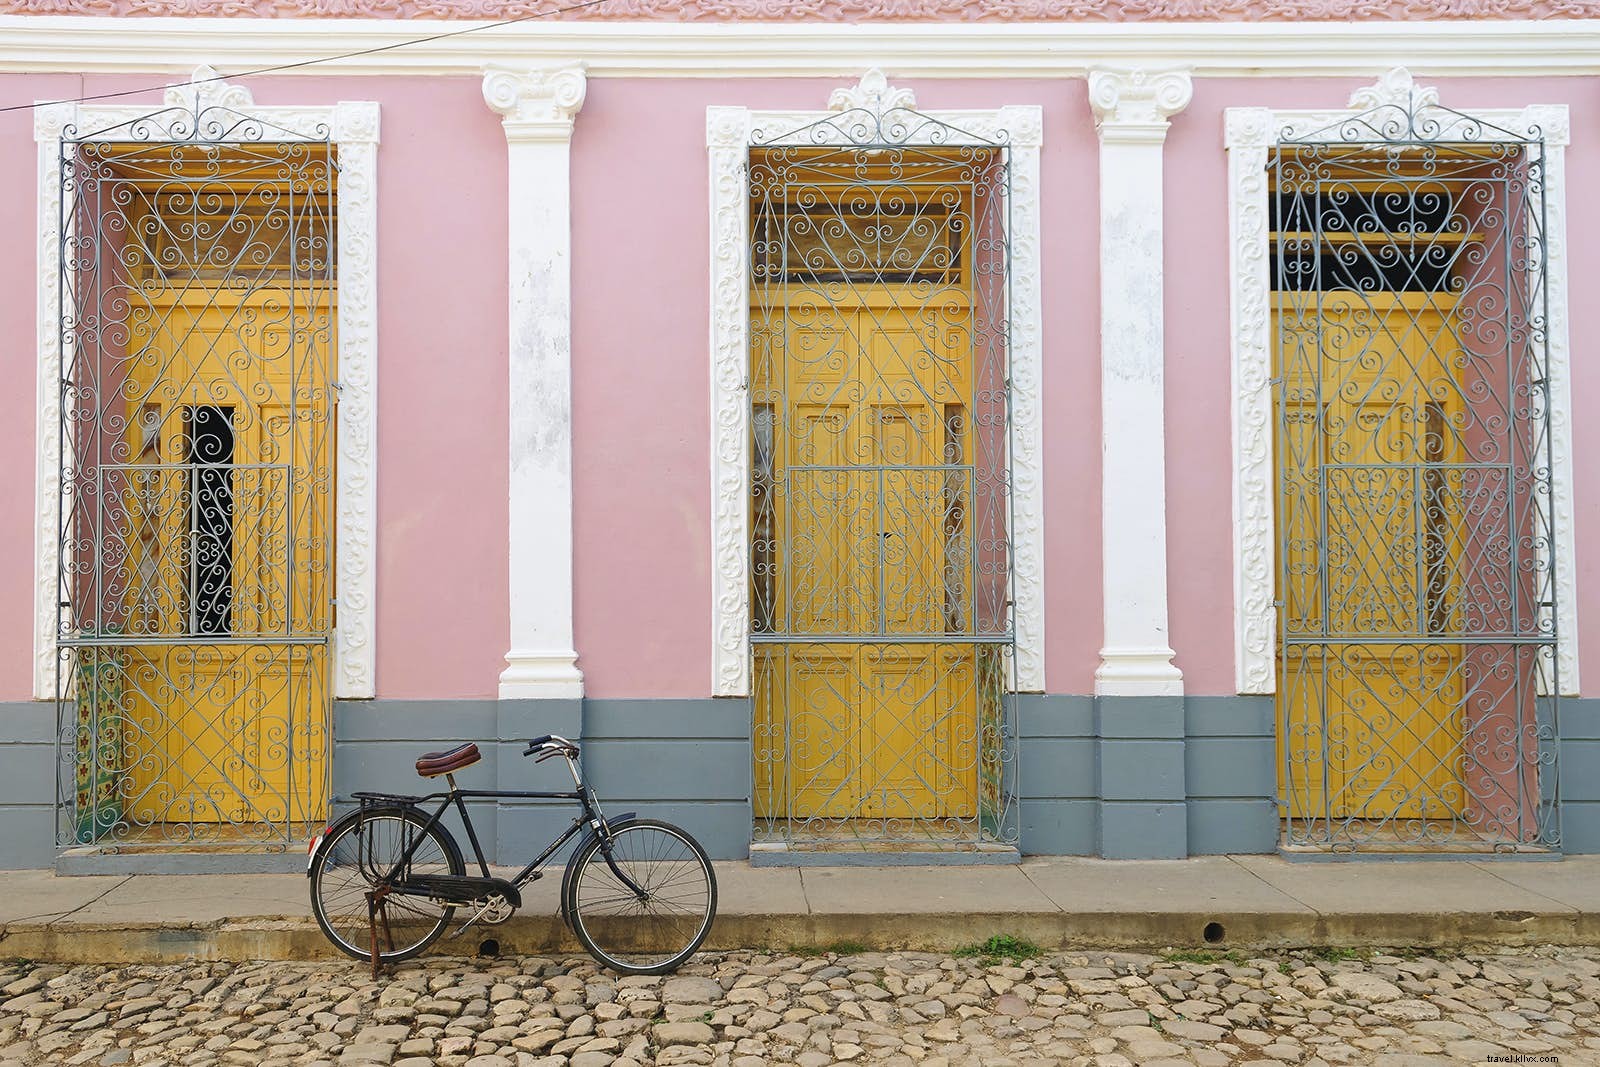 Prima volta a Cuba:cose da sapere prima di partire 